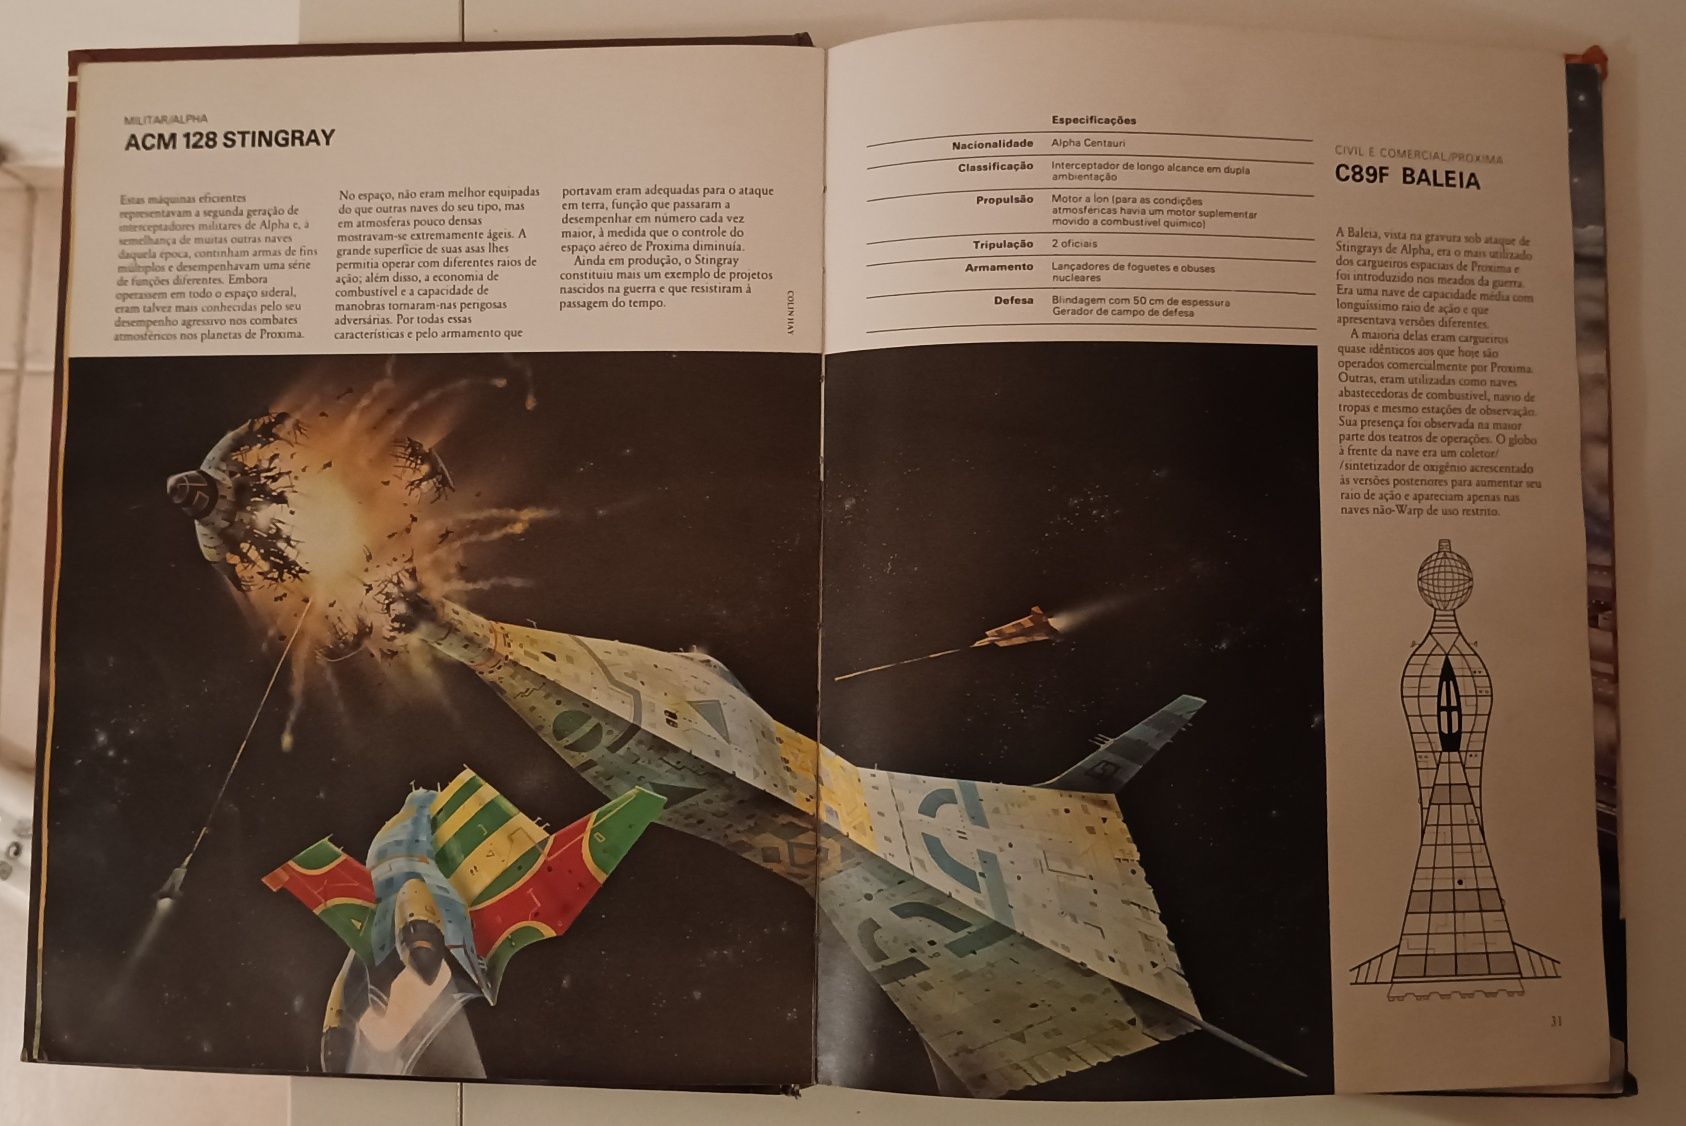 Naves Espaciais - Stewart Cowley - edição 1980 - ilustração sci-fi